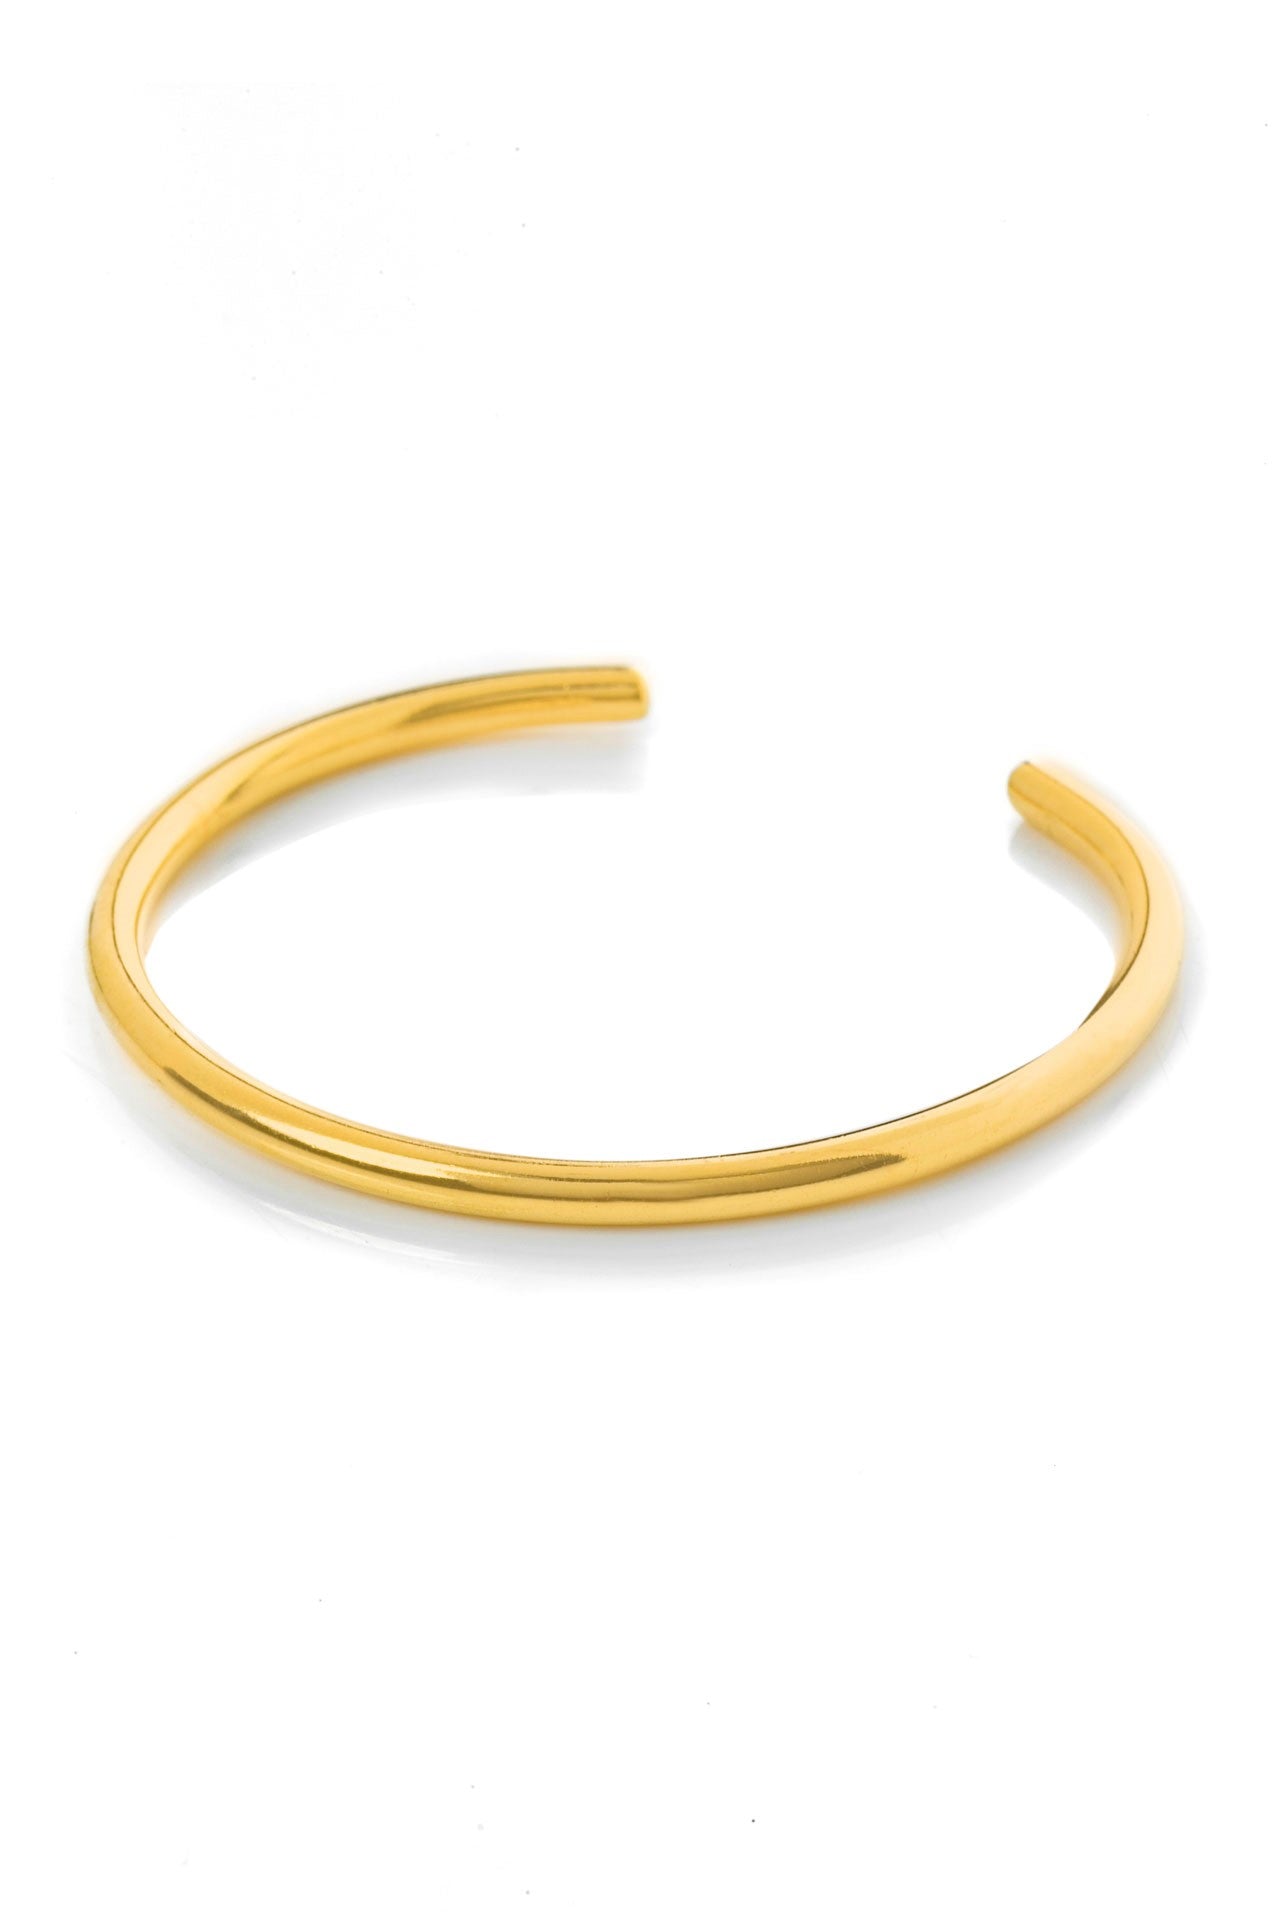 Tatjana oval bracelet brass  by Pearl Martini